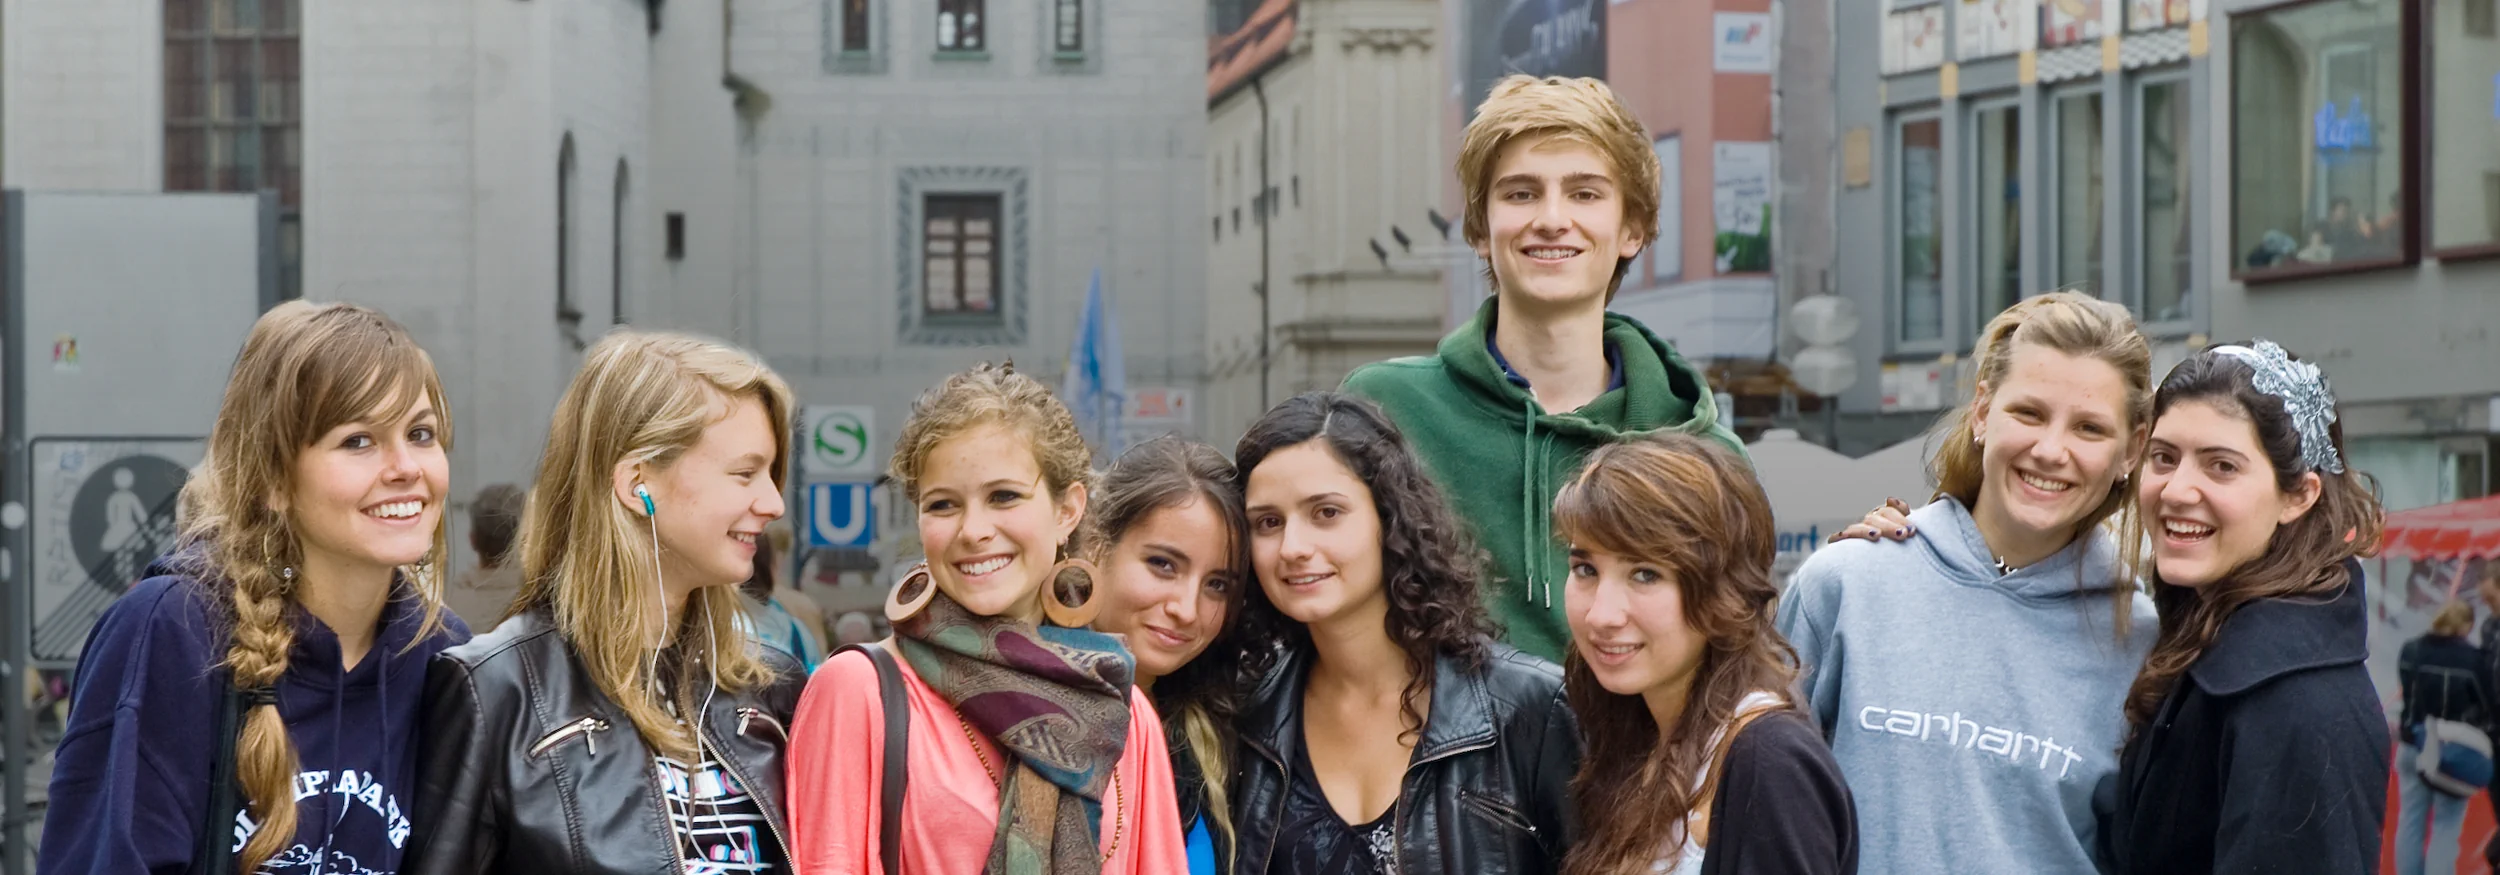 Stadtbesichtigung der Schülerinnen und Schüler in München